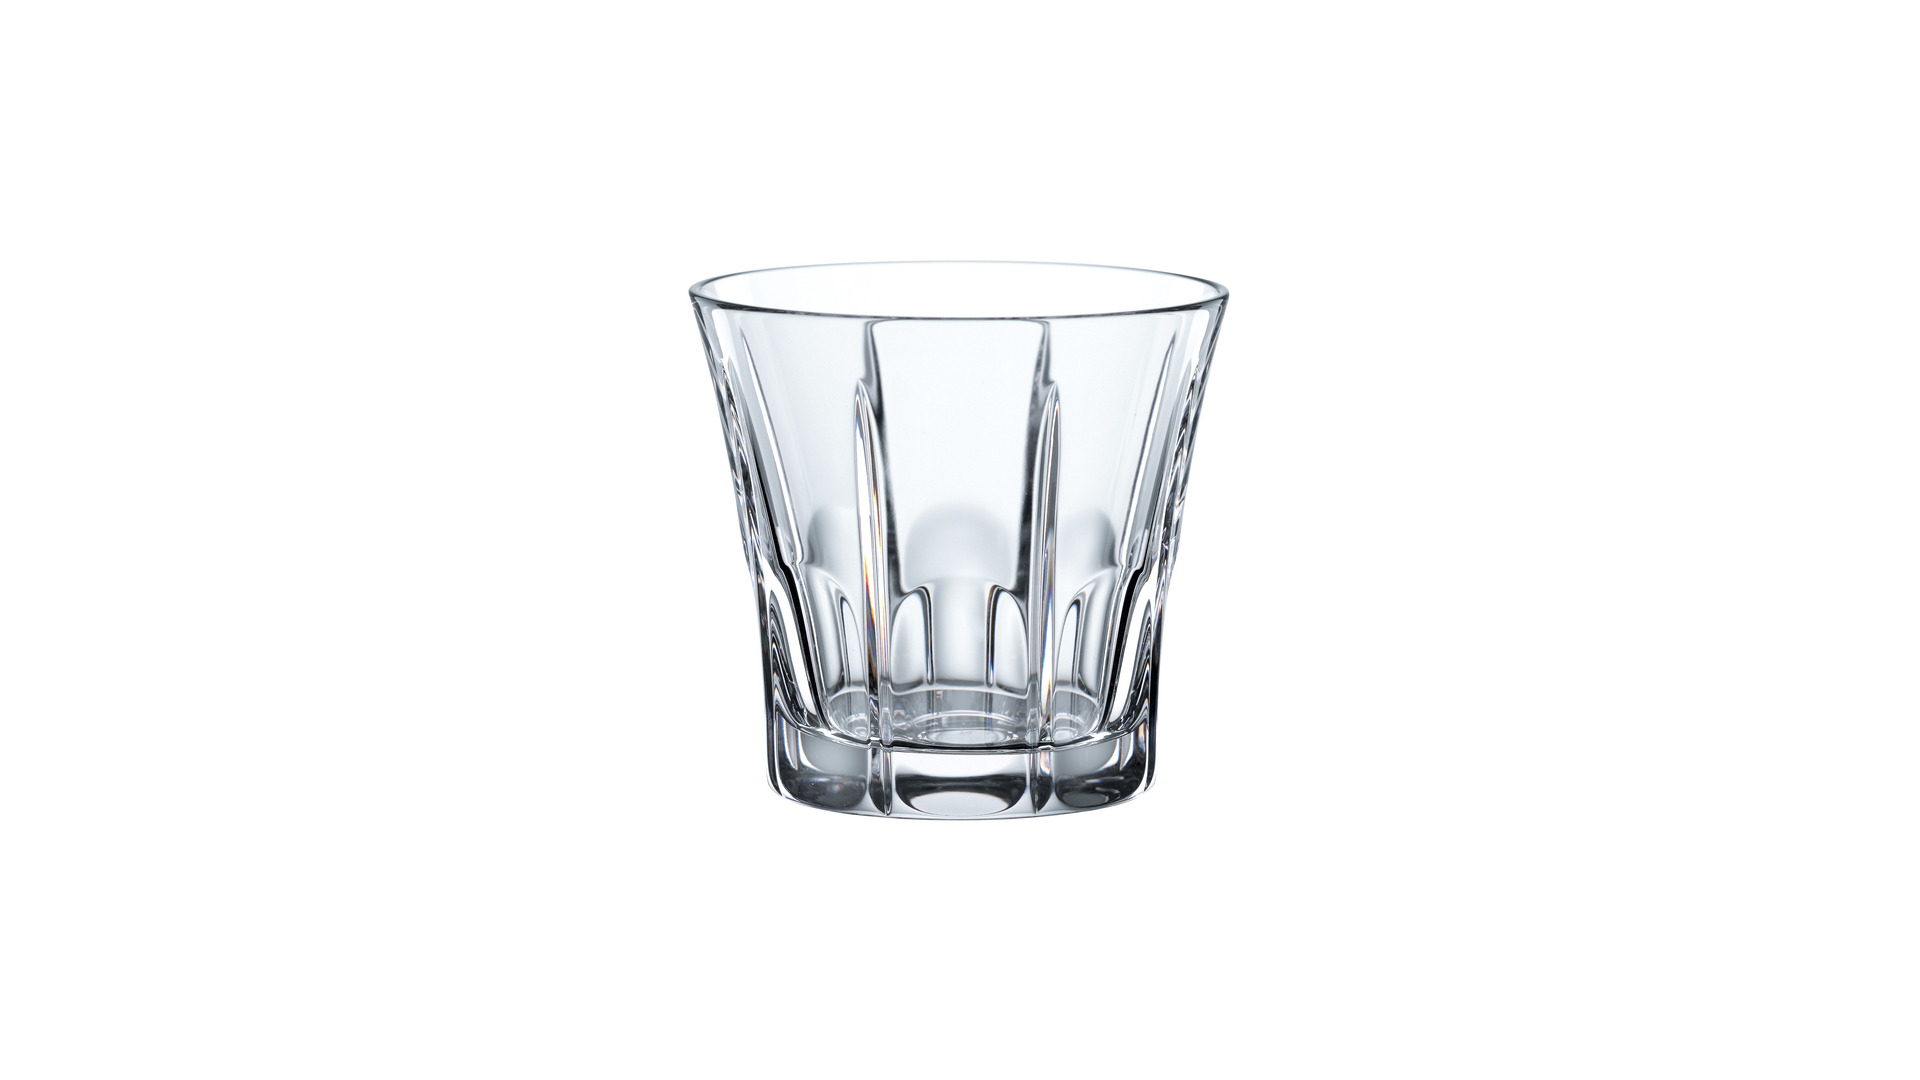 Набор стаканов для виски Nachtmann CLASSIX 247 мл, 4 шт, стекло хрустальное, п/к-sale